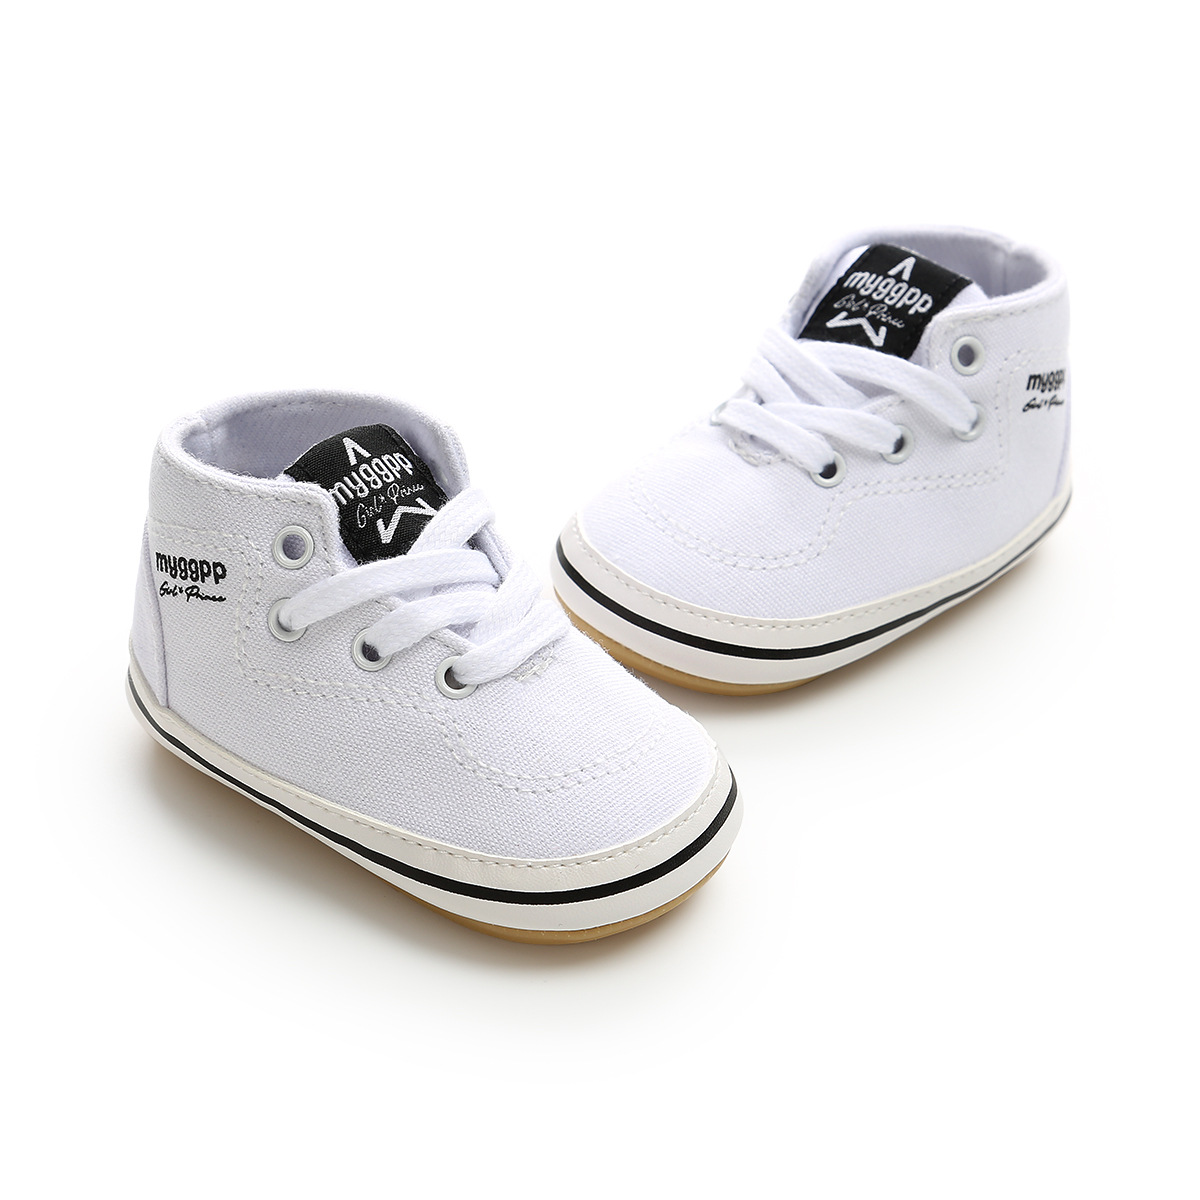 Chaussures bébé en coton - Ref 3436710 Image 201